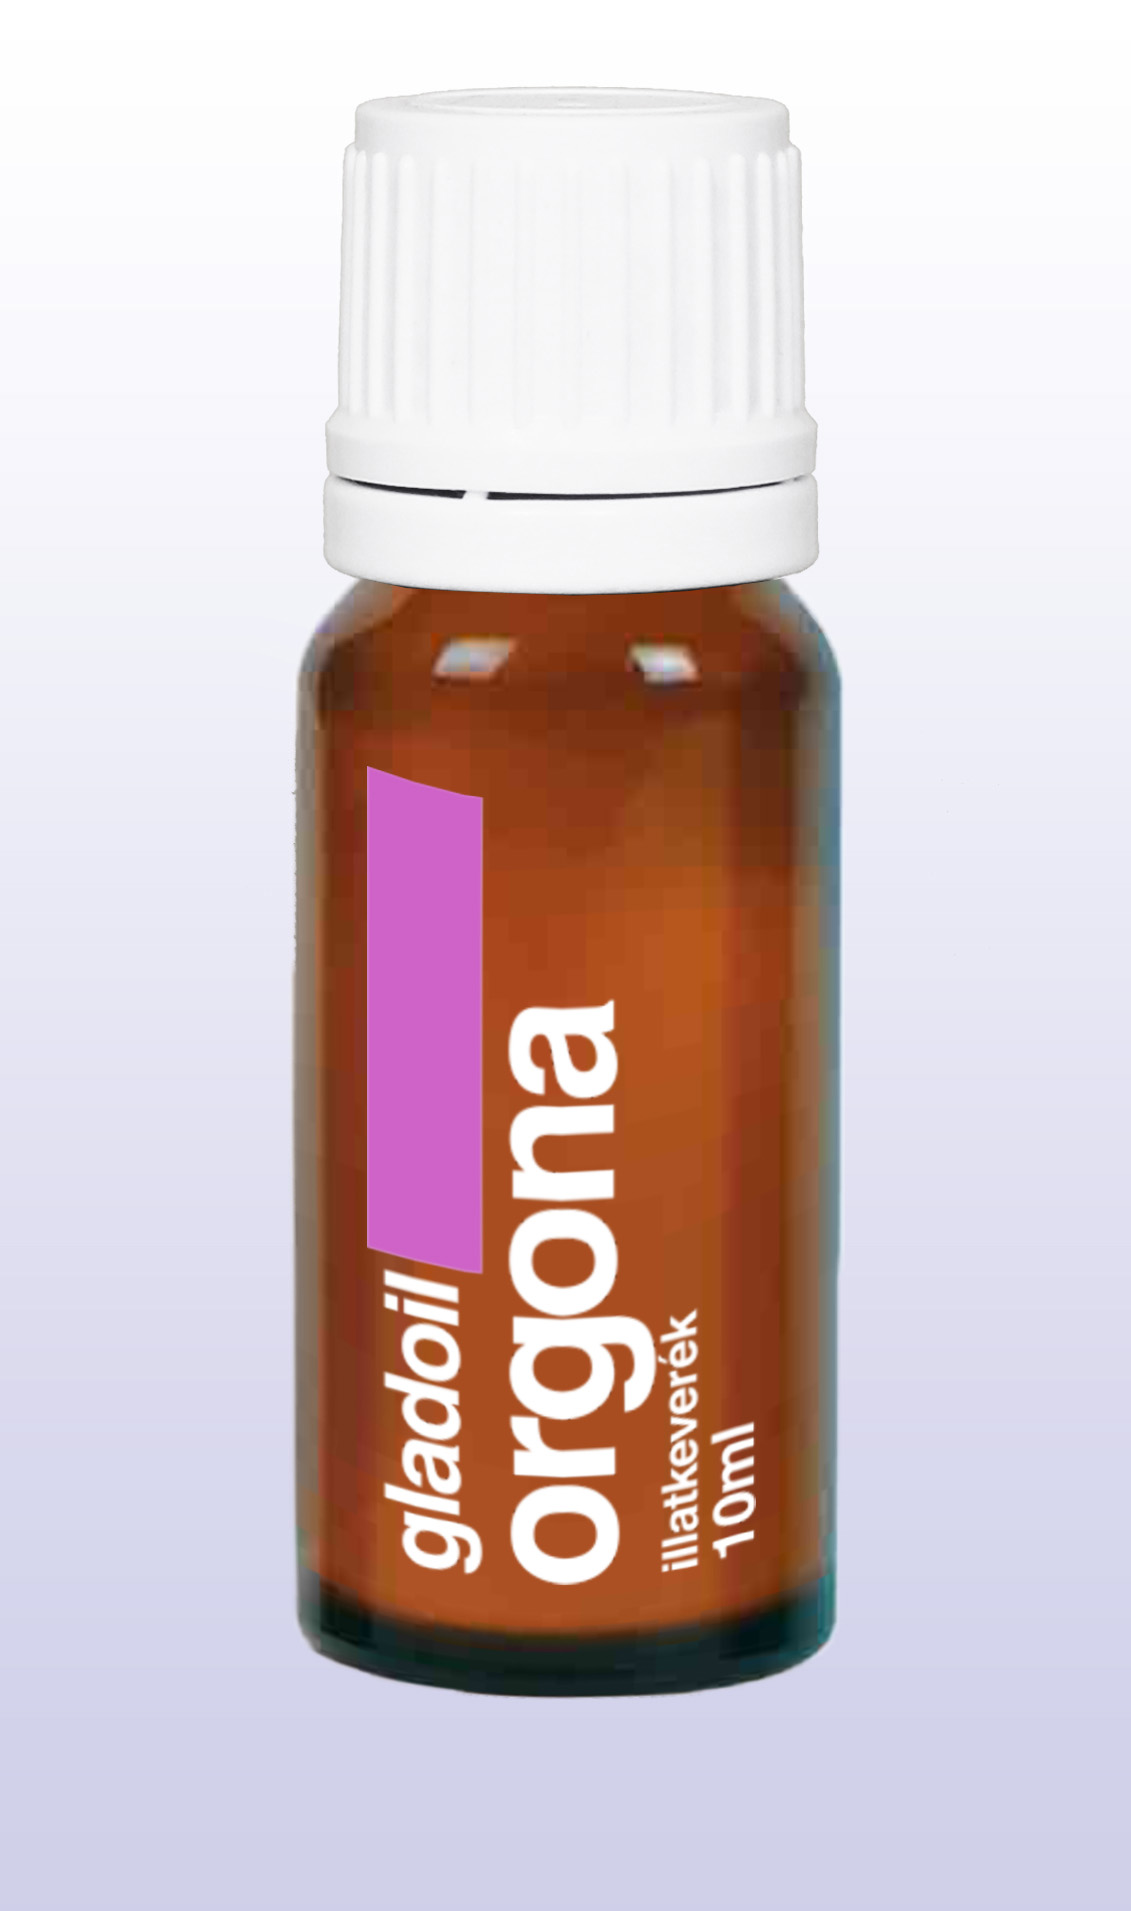 Fleurita/Gladoil Orgona Olaj - Illóolaj 10 ml